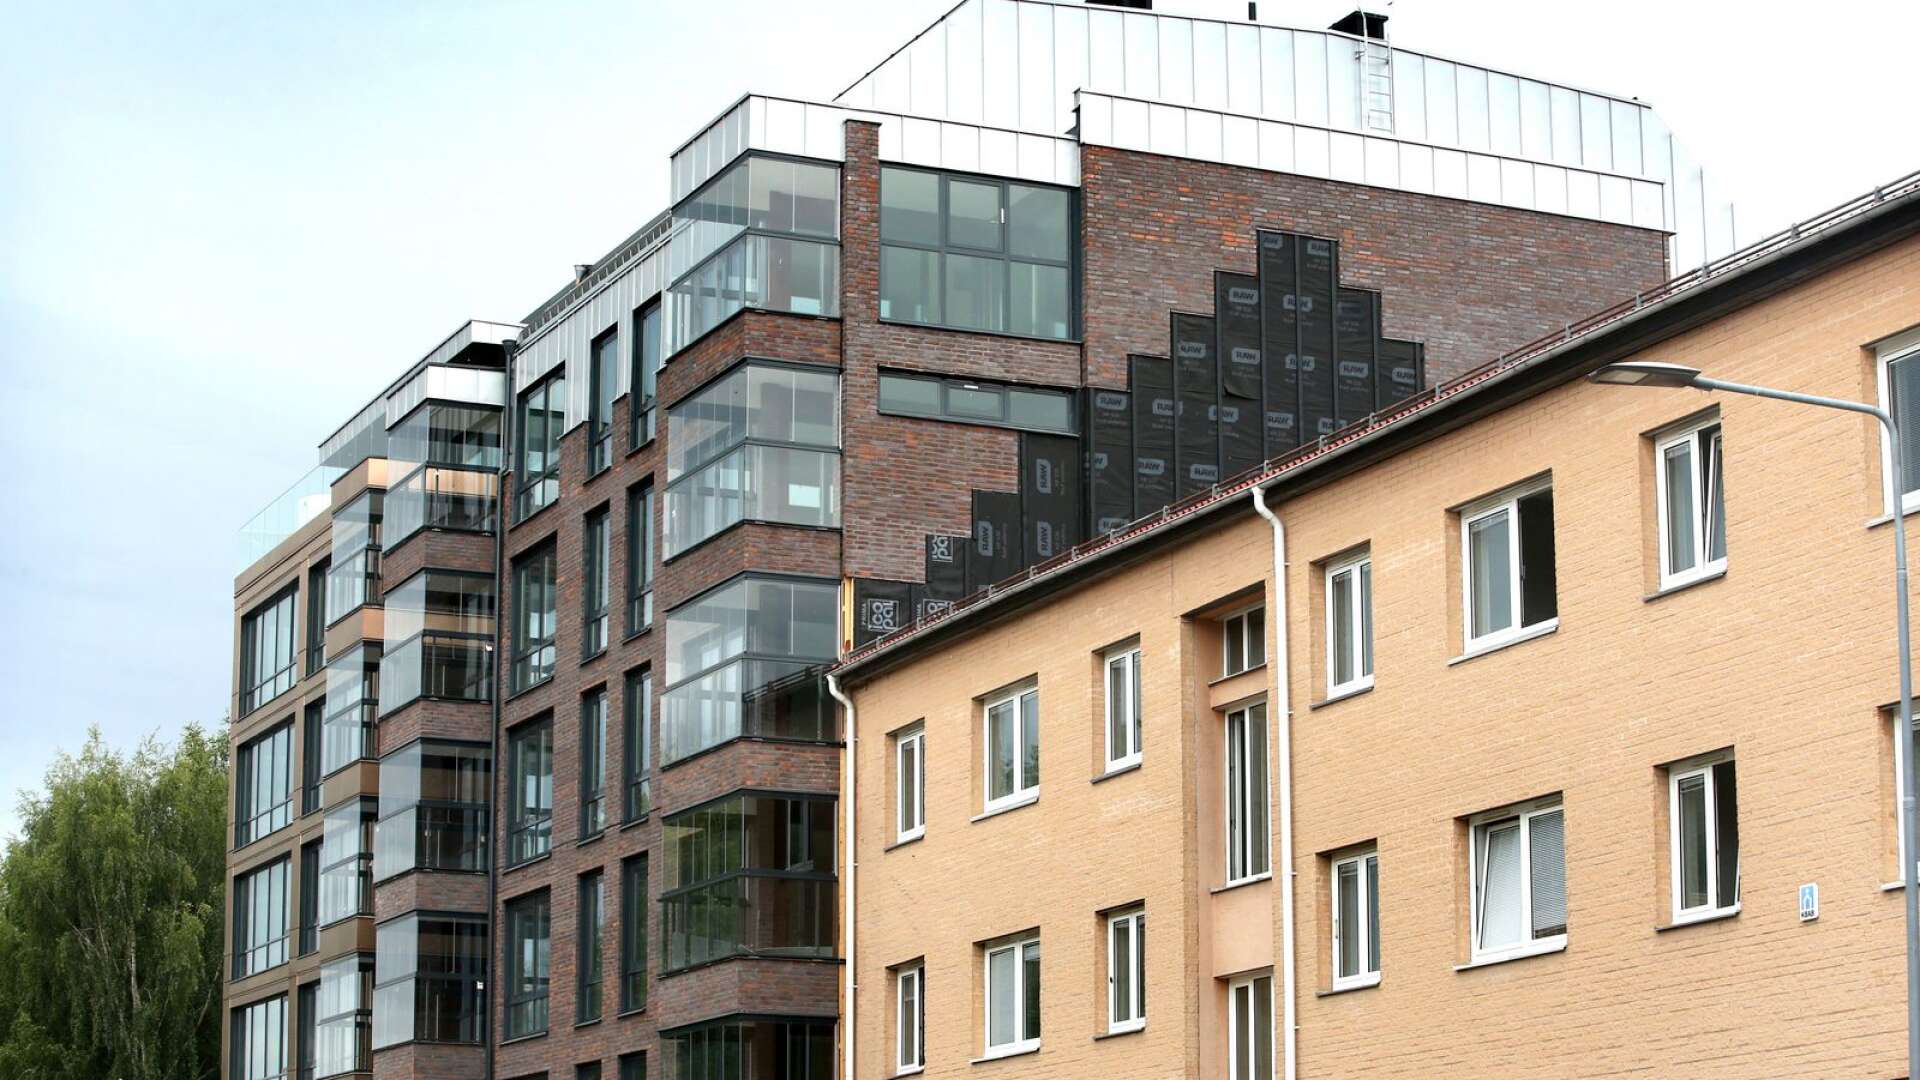 Det nya huset på Brogatan är ett skräckexempel på förtätningen, tycker insändarskribenten.